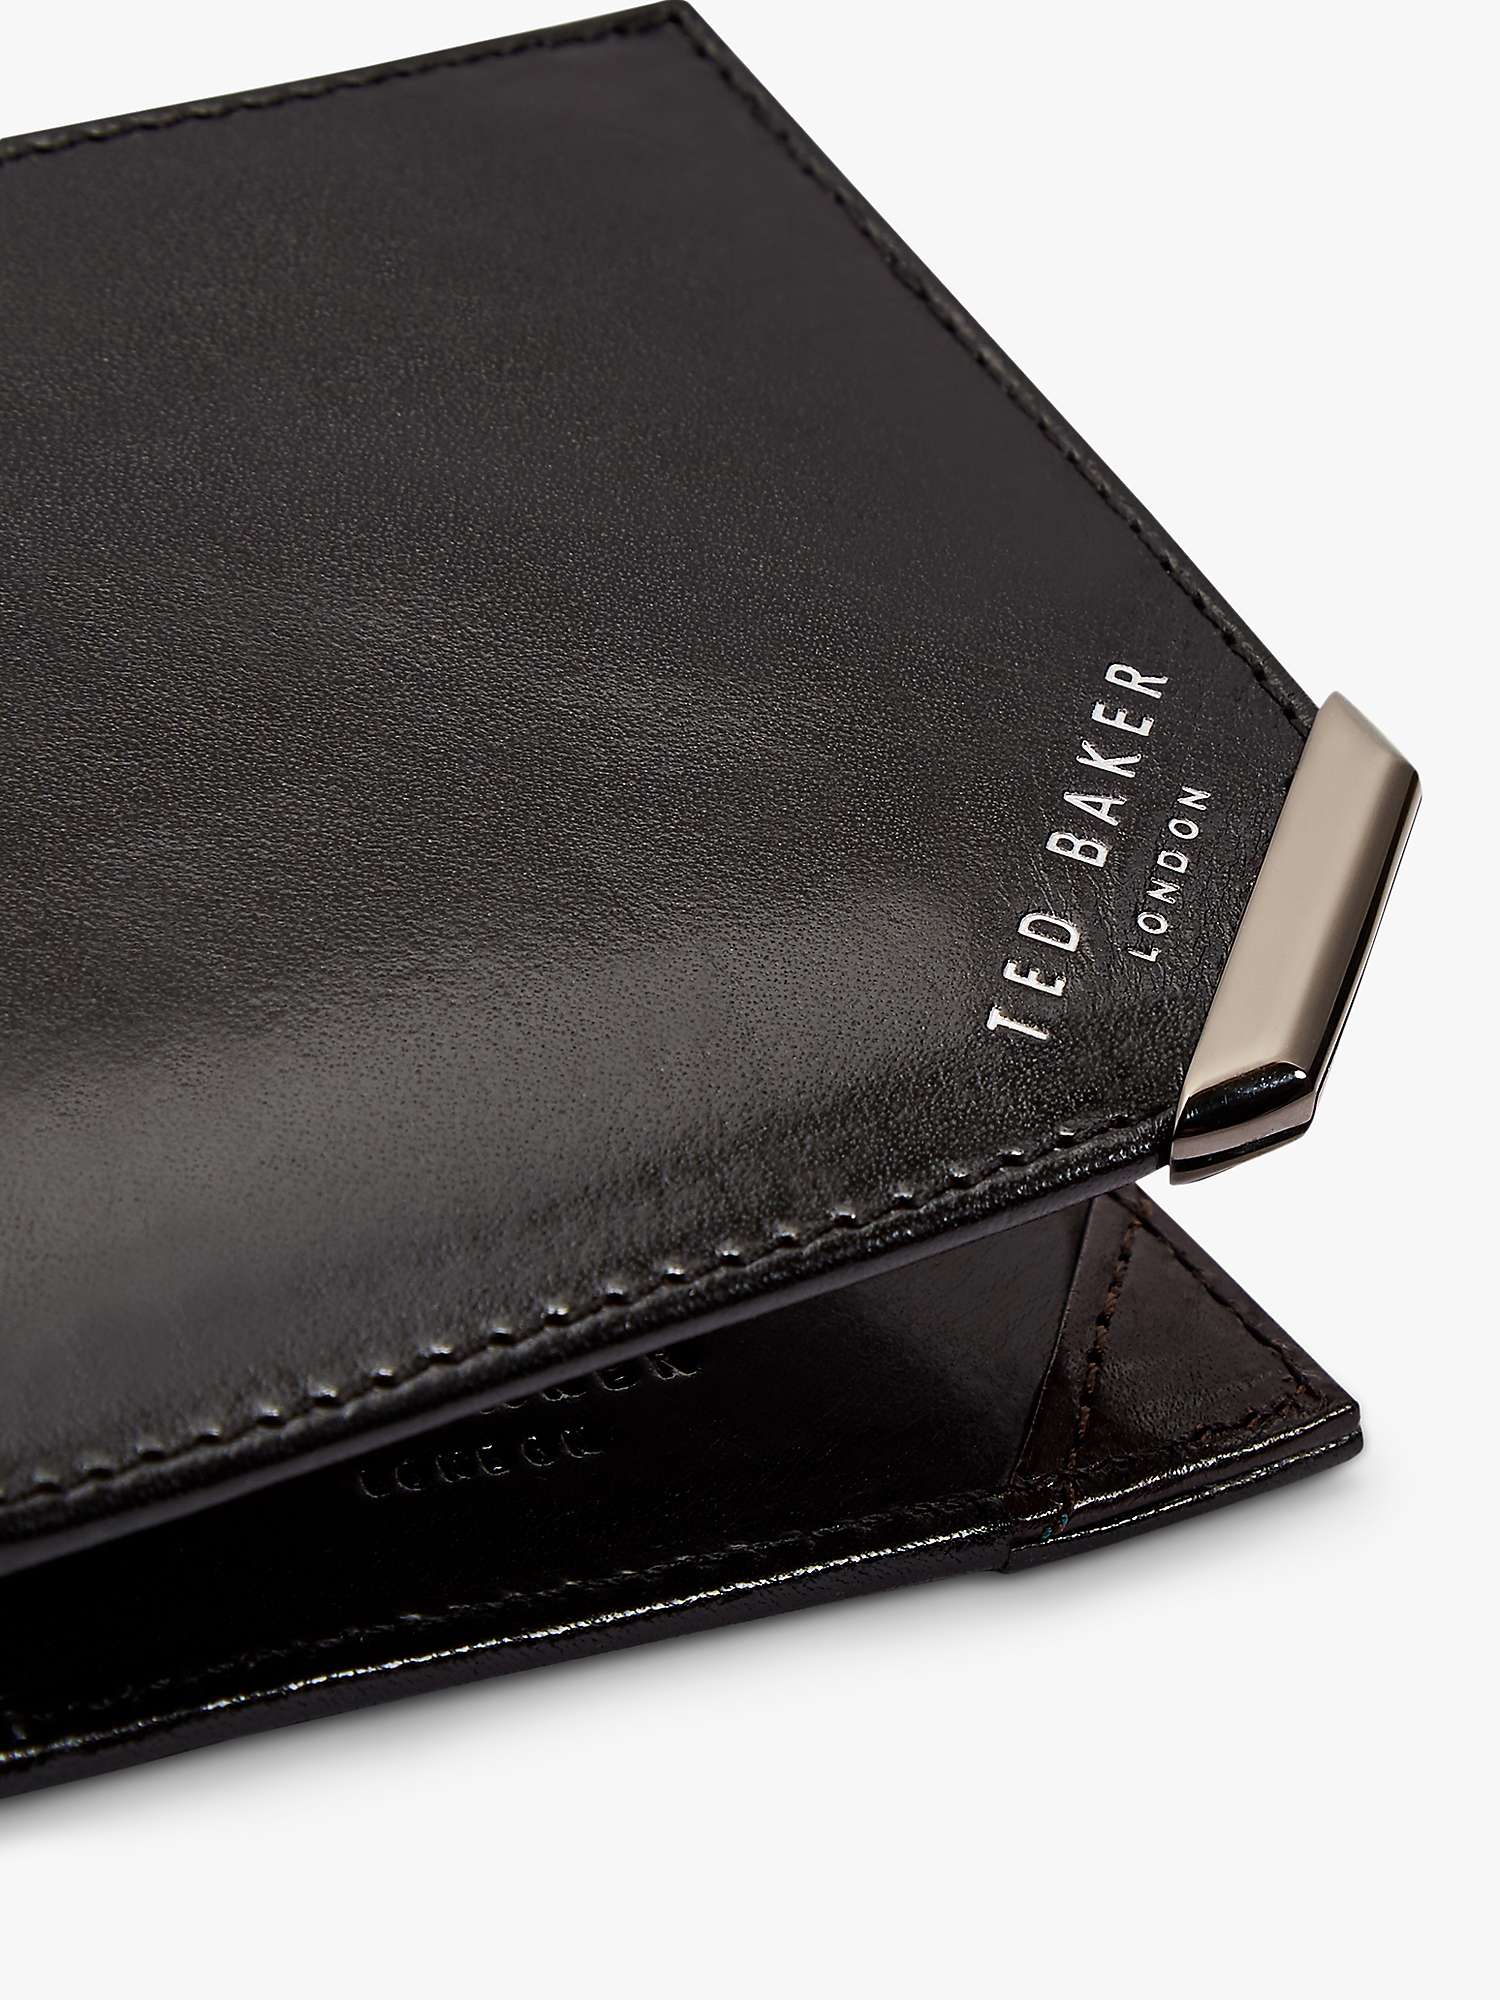 Buy Ted Baker Korning Leather Bifold Wallet, Black Online at johnlewis.com